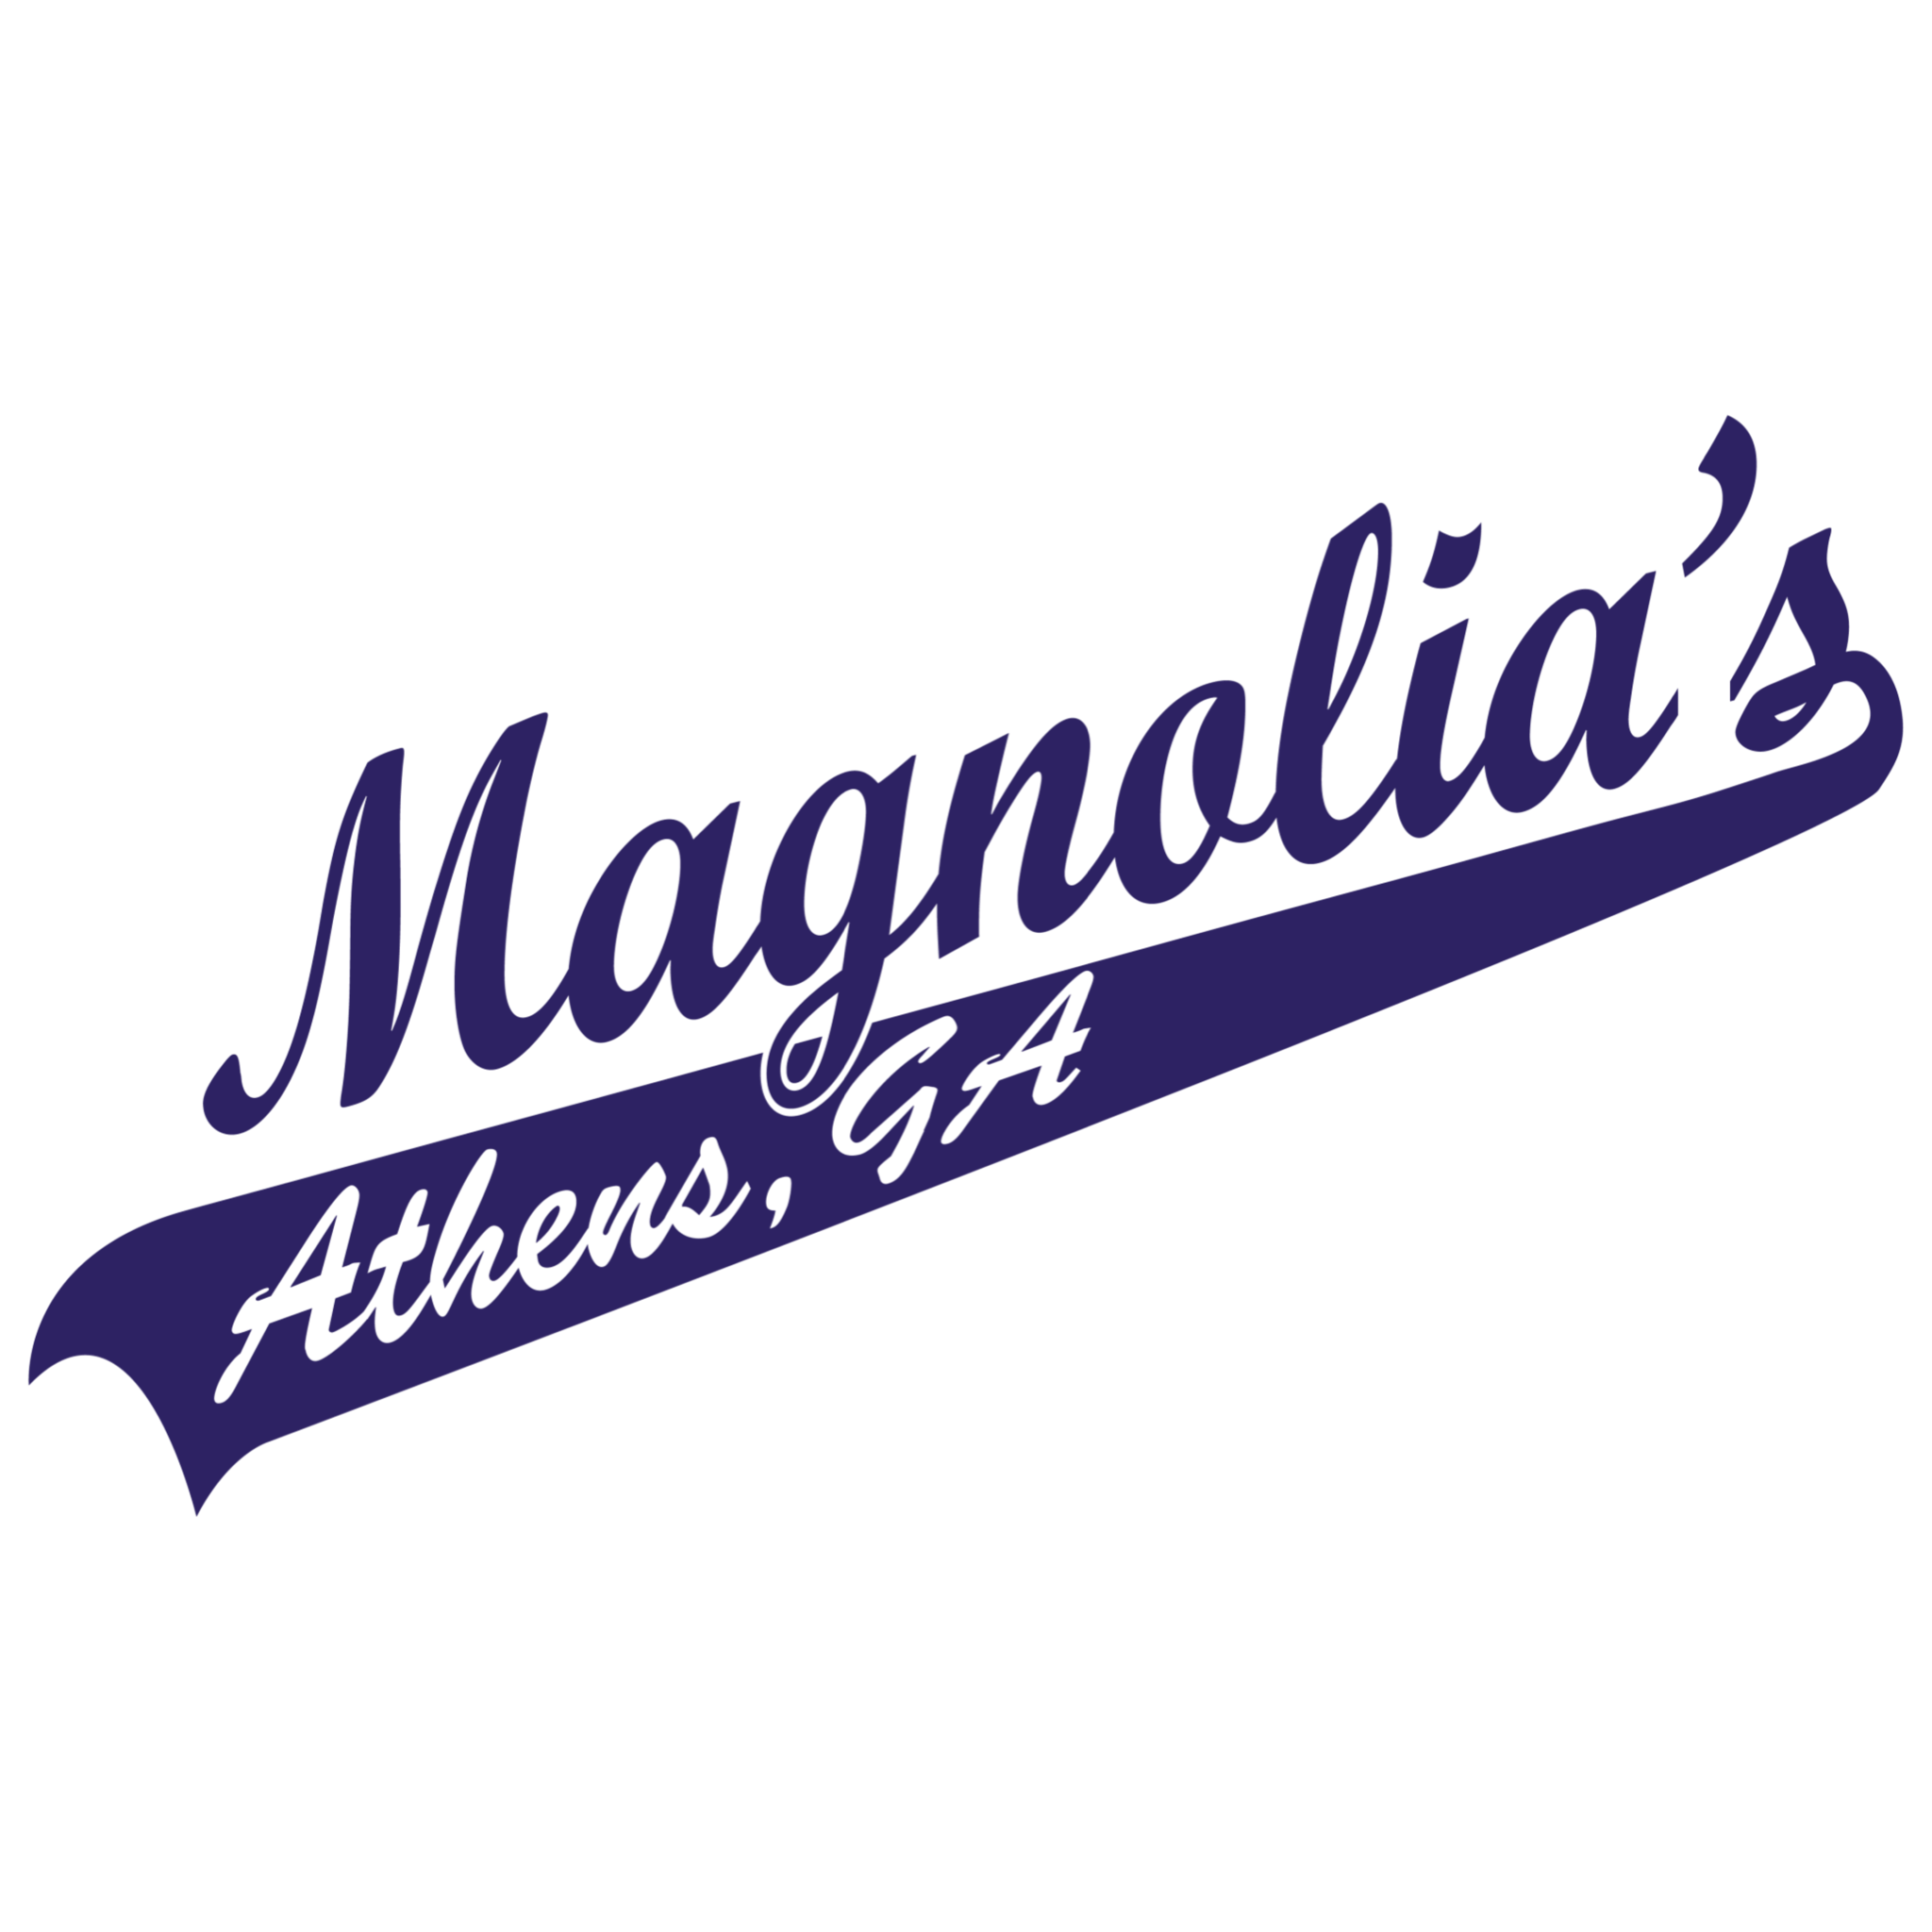 Magnolias Bar of Athens